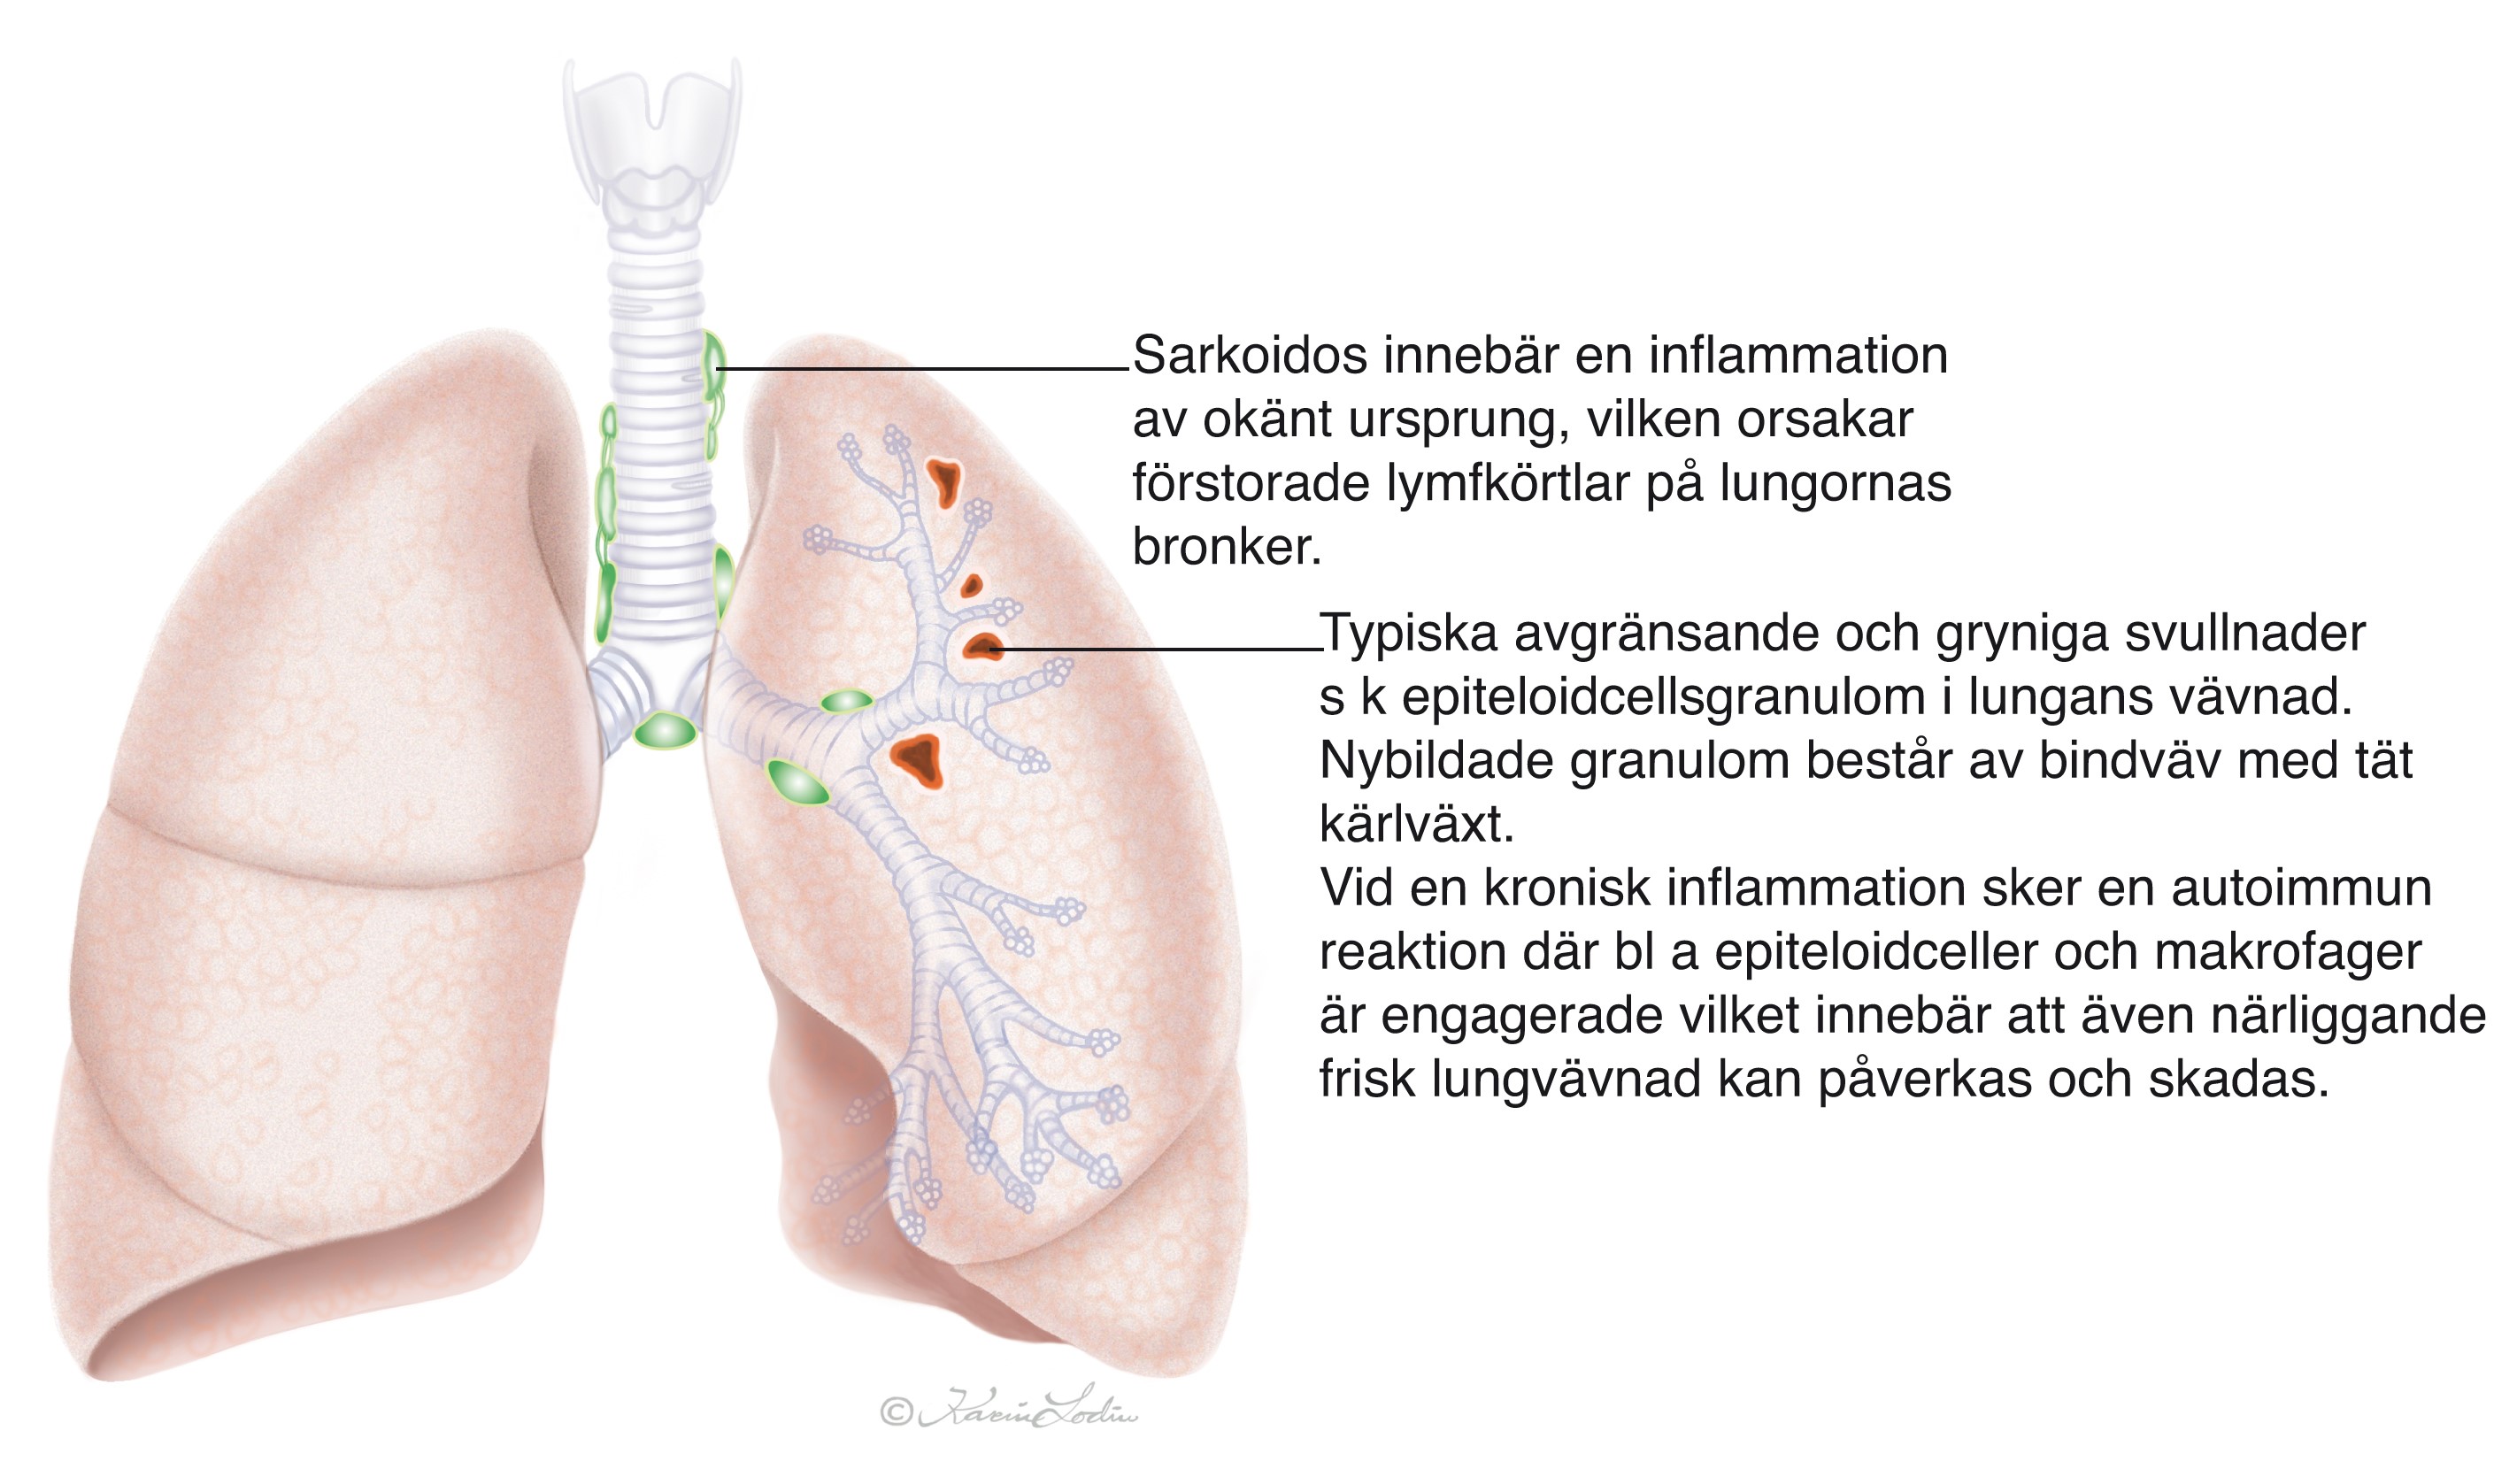 Bilden visar ett par lungor som är drabbade av sarkoidos.